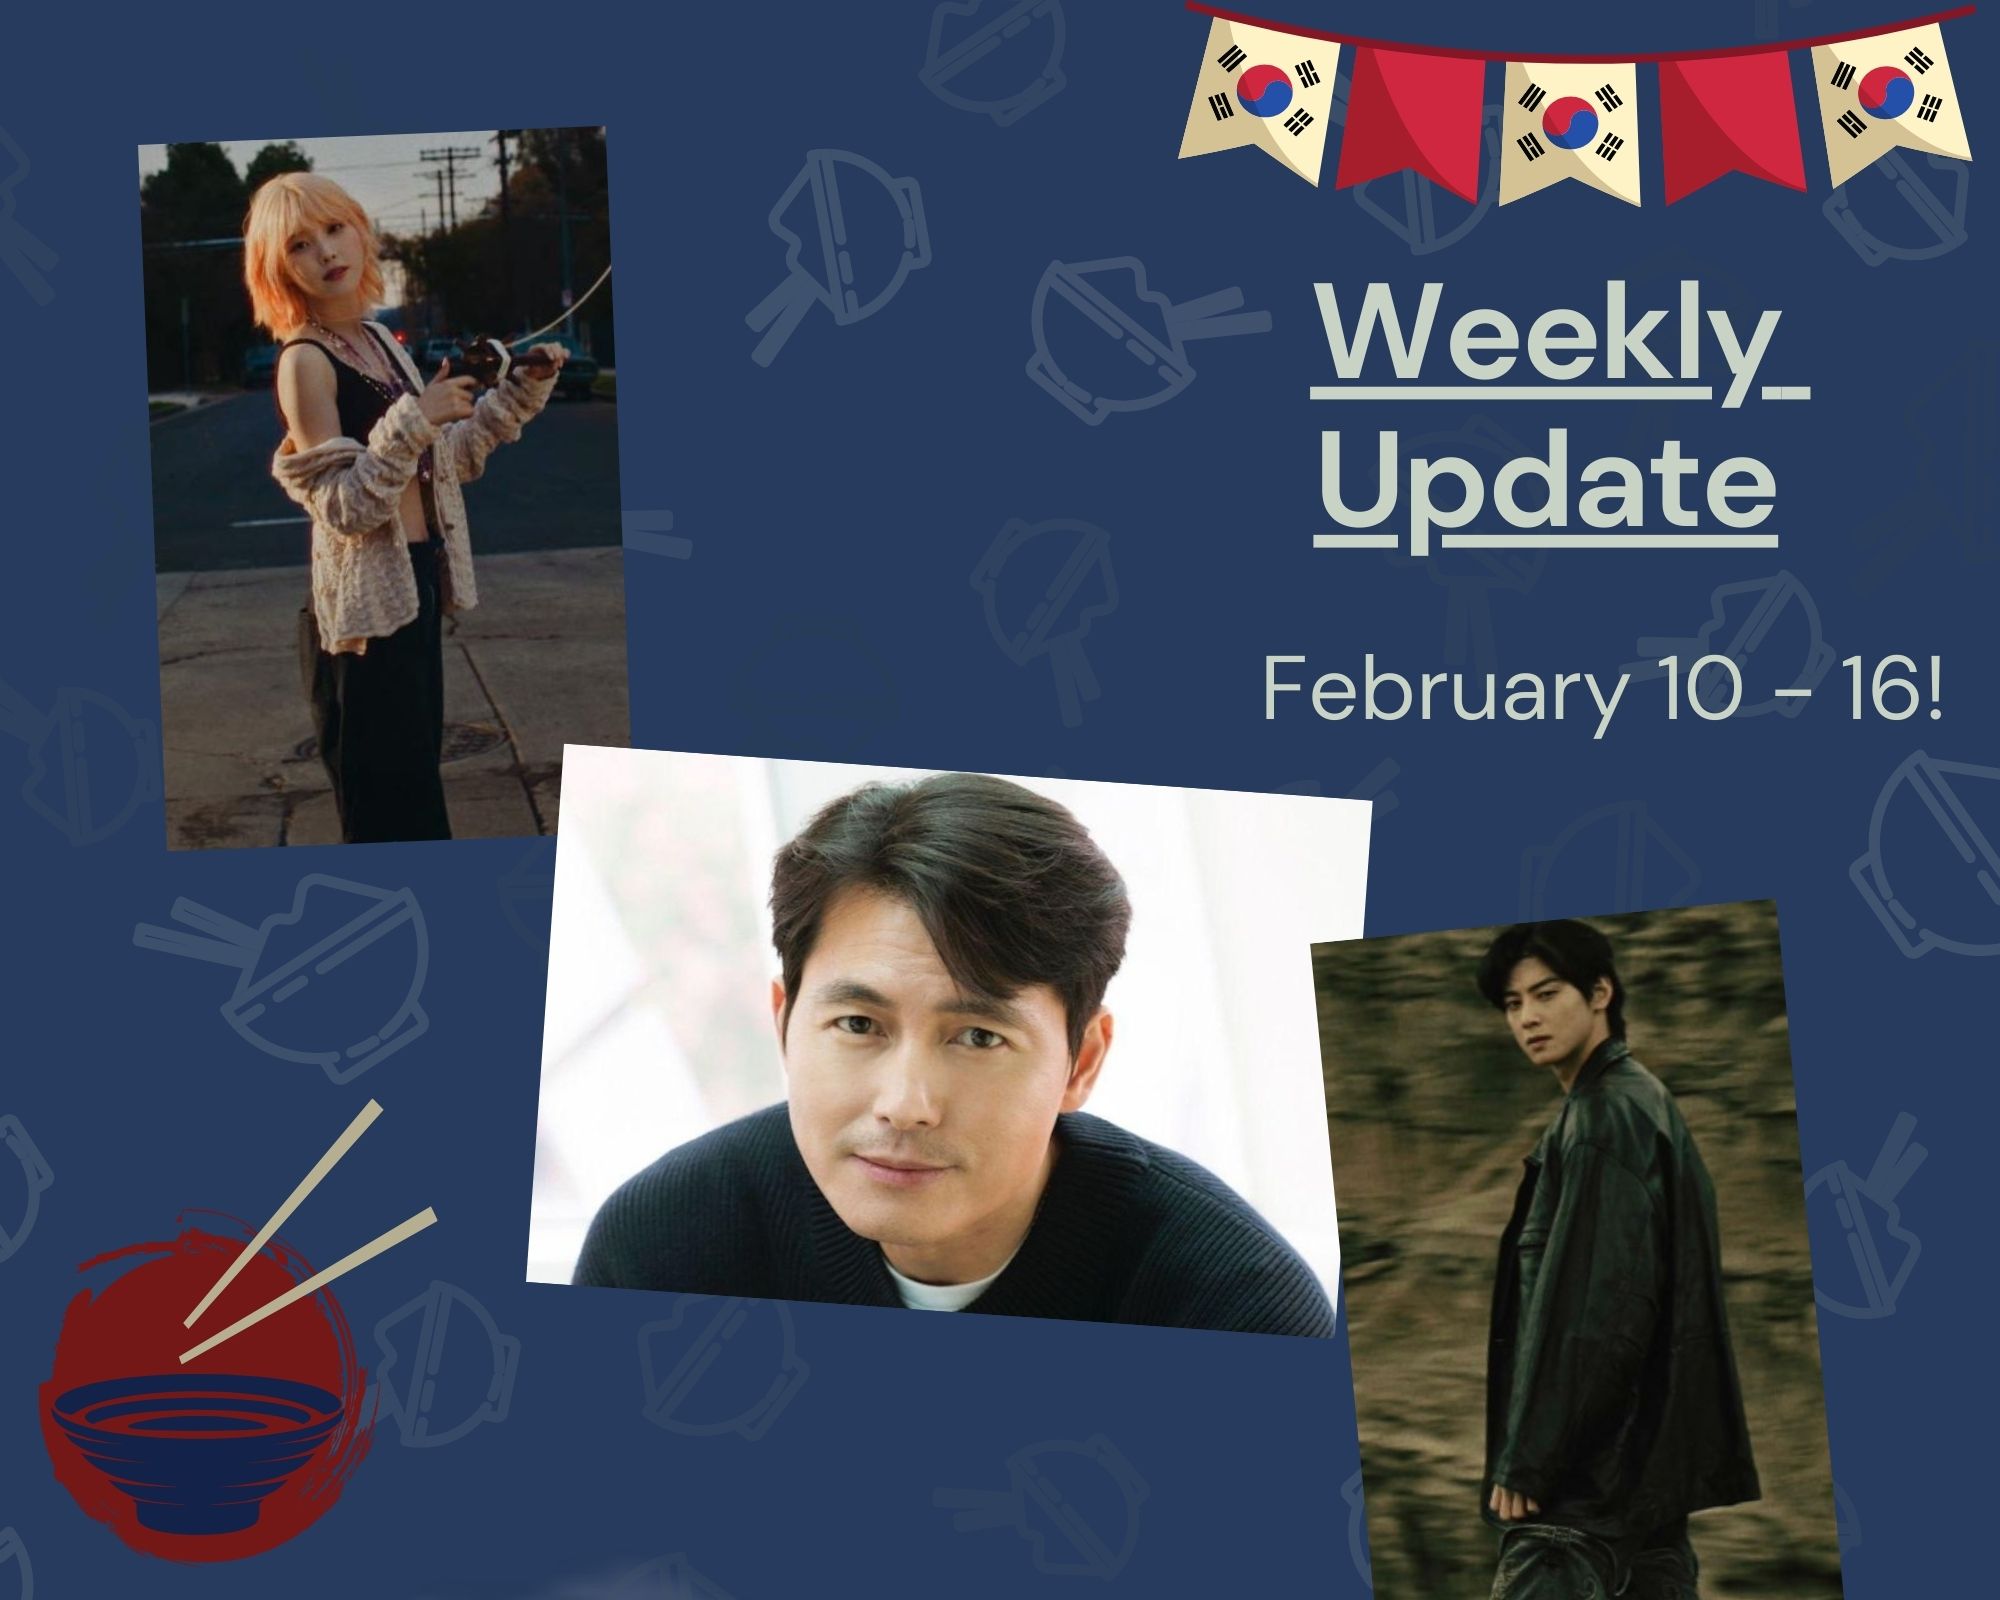 Weekly Update - February 10 - 16